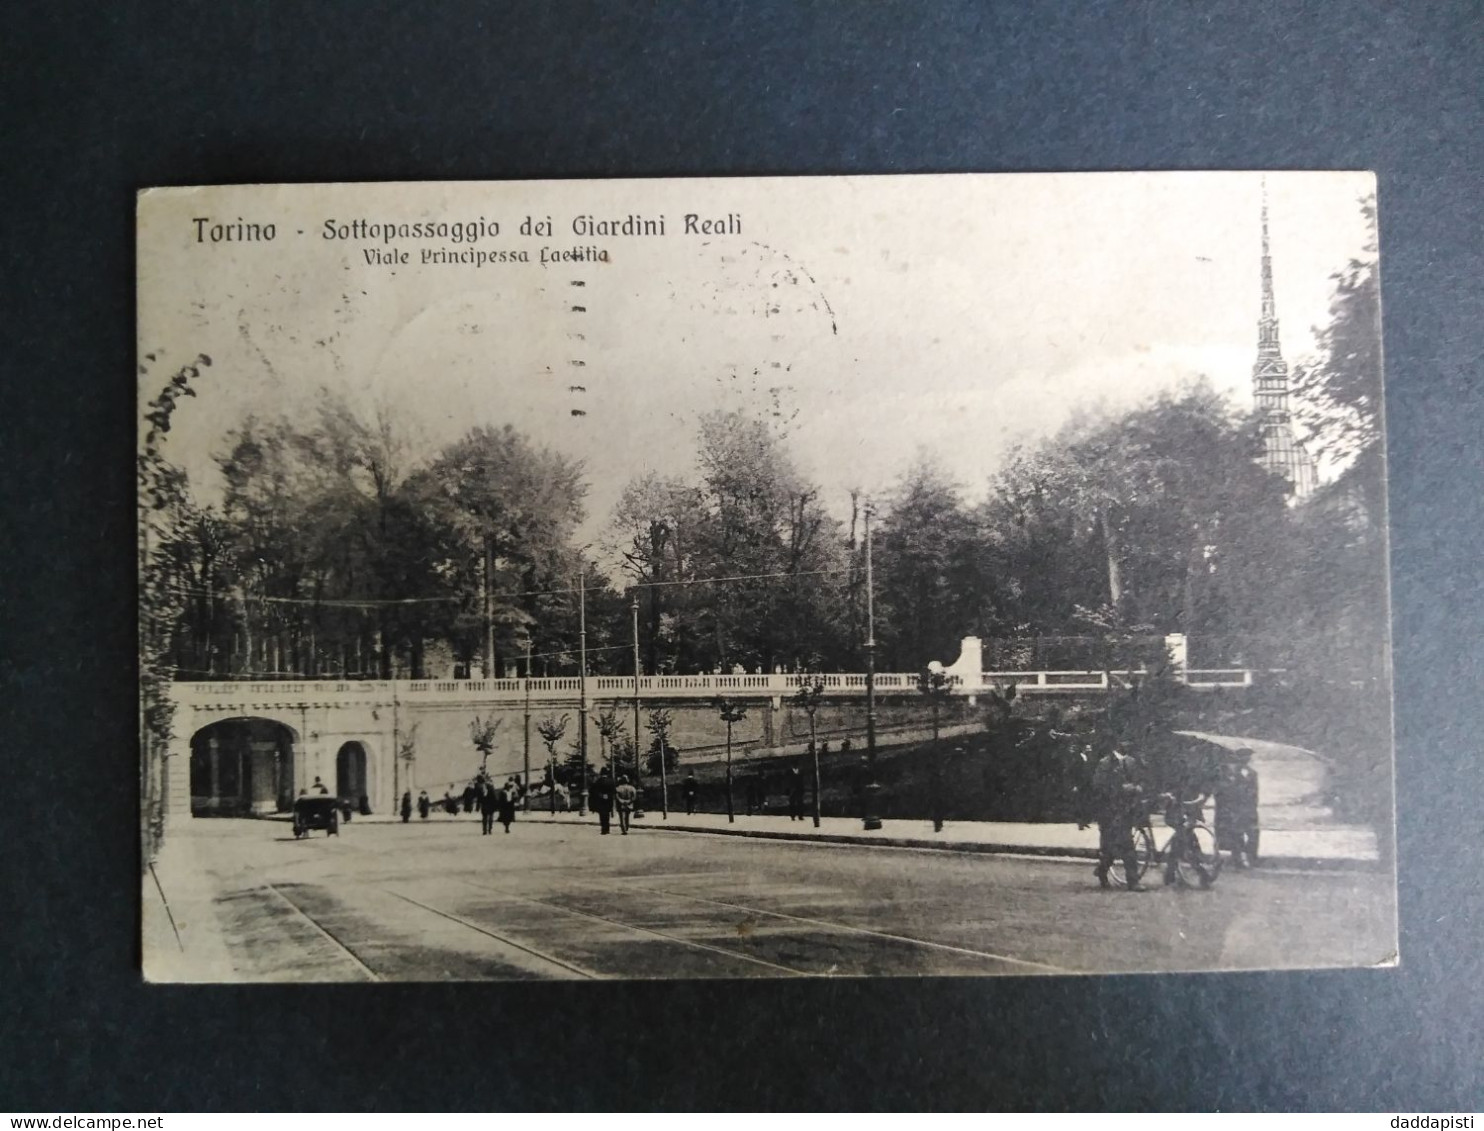 [S1] Torino - Sottopassaggio Dei Giardini Reali Con Passanti E Calesse. Piccolo Formato,Viaggiata, 1925 - Parks & Gardens